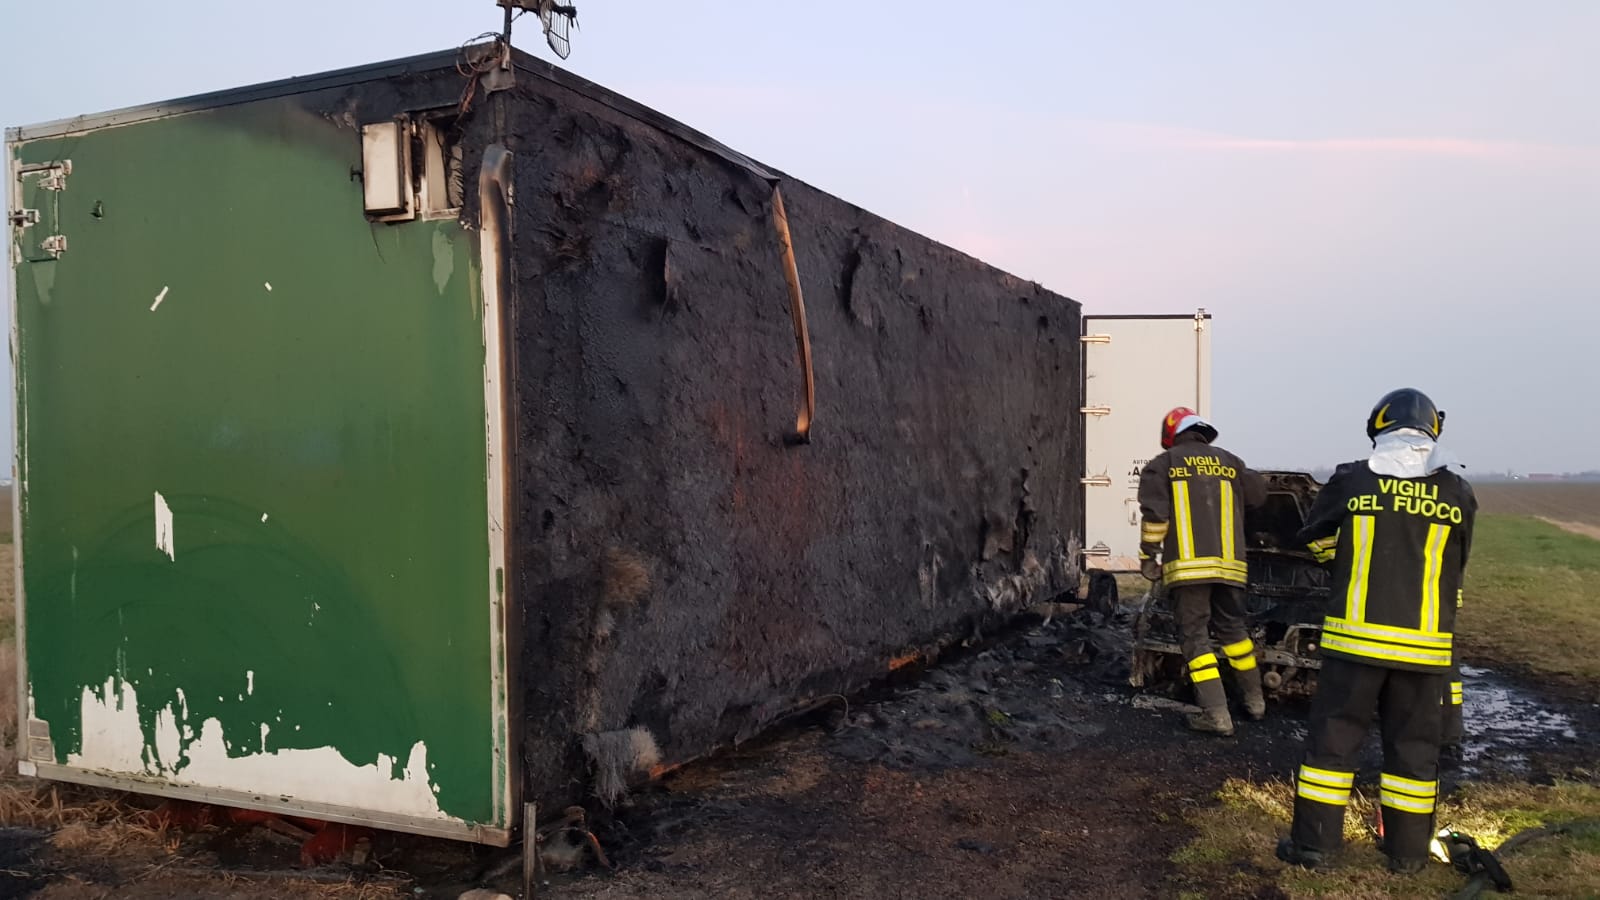 ACME Italia - VAndali bruciano il container sul campo di lancio